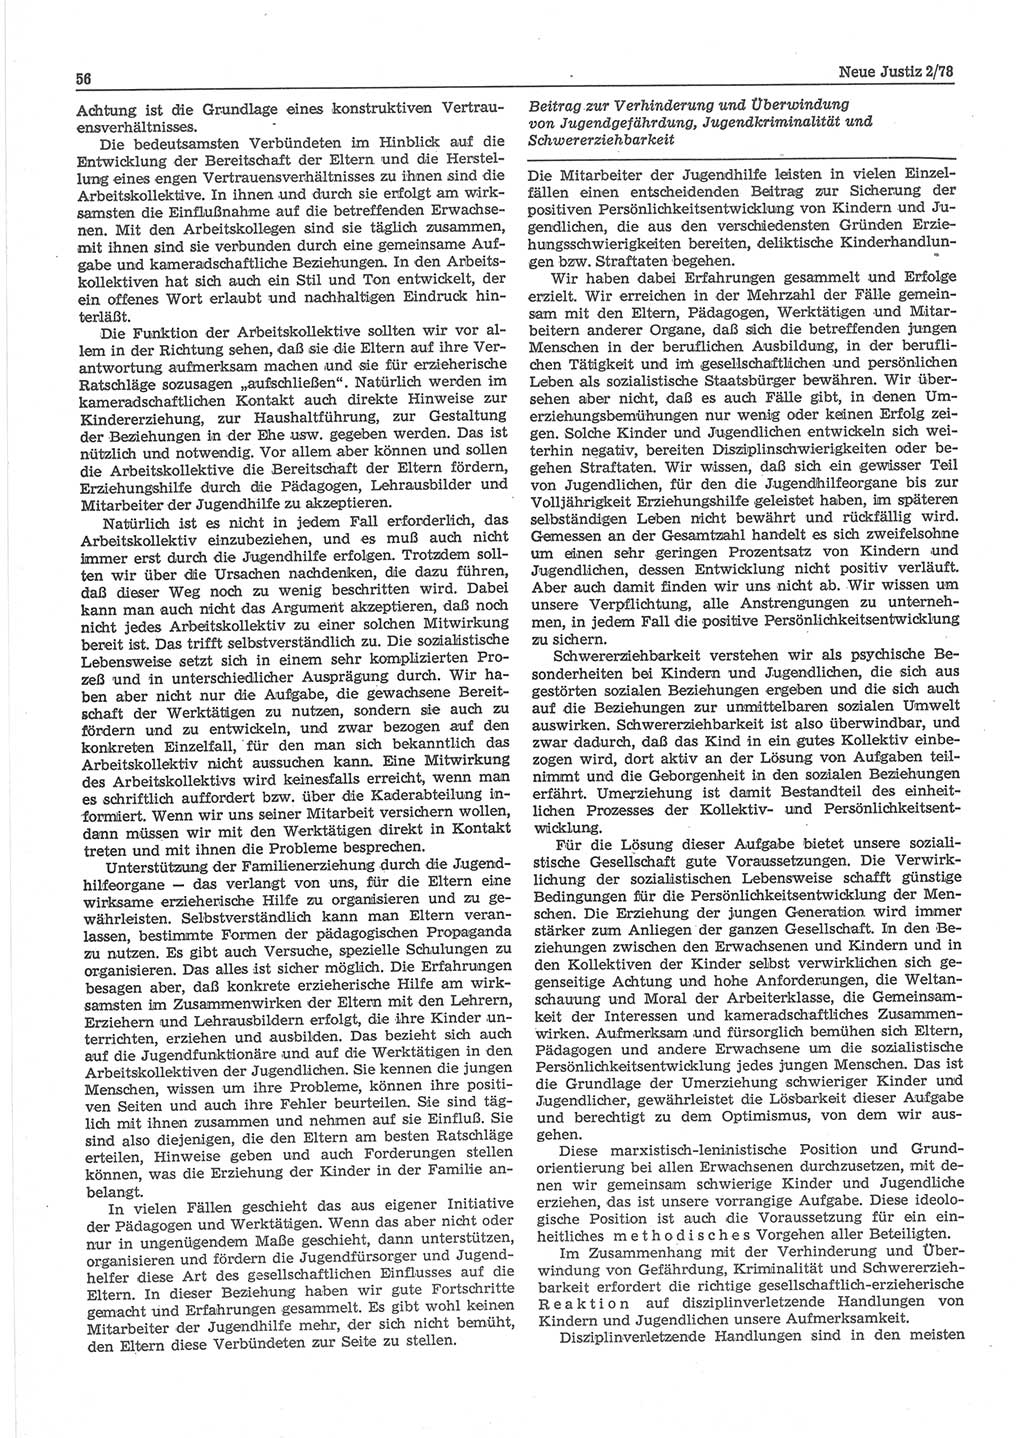 Neue Justiz (NJ), Zeitschrift für sozialistisches Recht und Gesetzlichkeit [Deutsche Demokratische Republik (DDR)], 32. Jahrgang 1978, Seite 56 (NJ DDR 1978, S. 56)